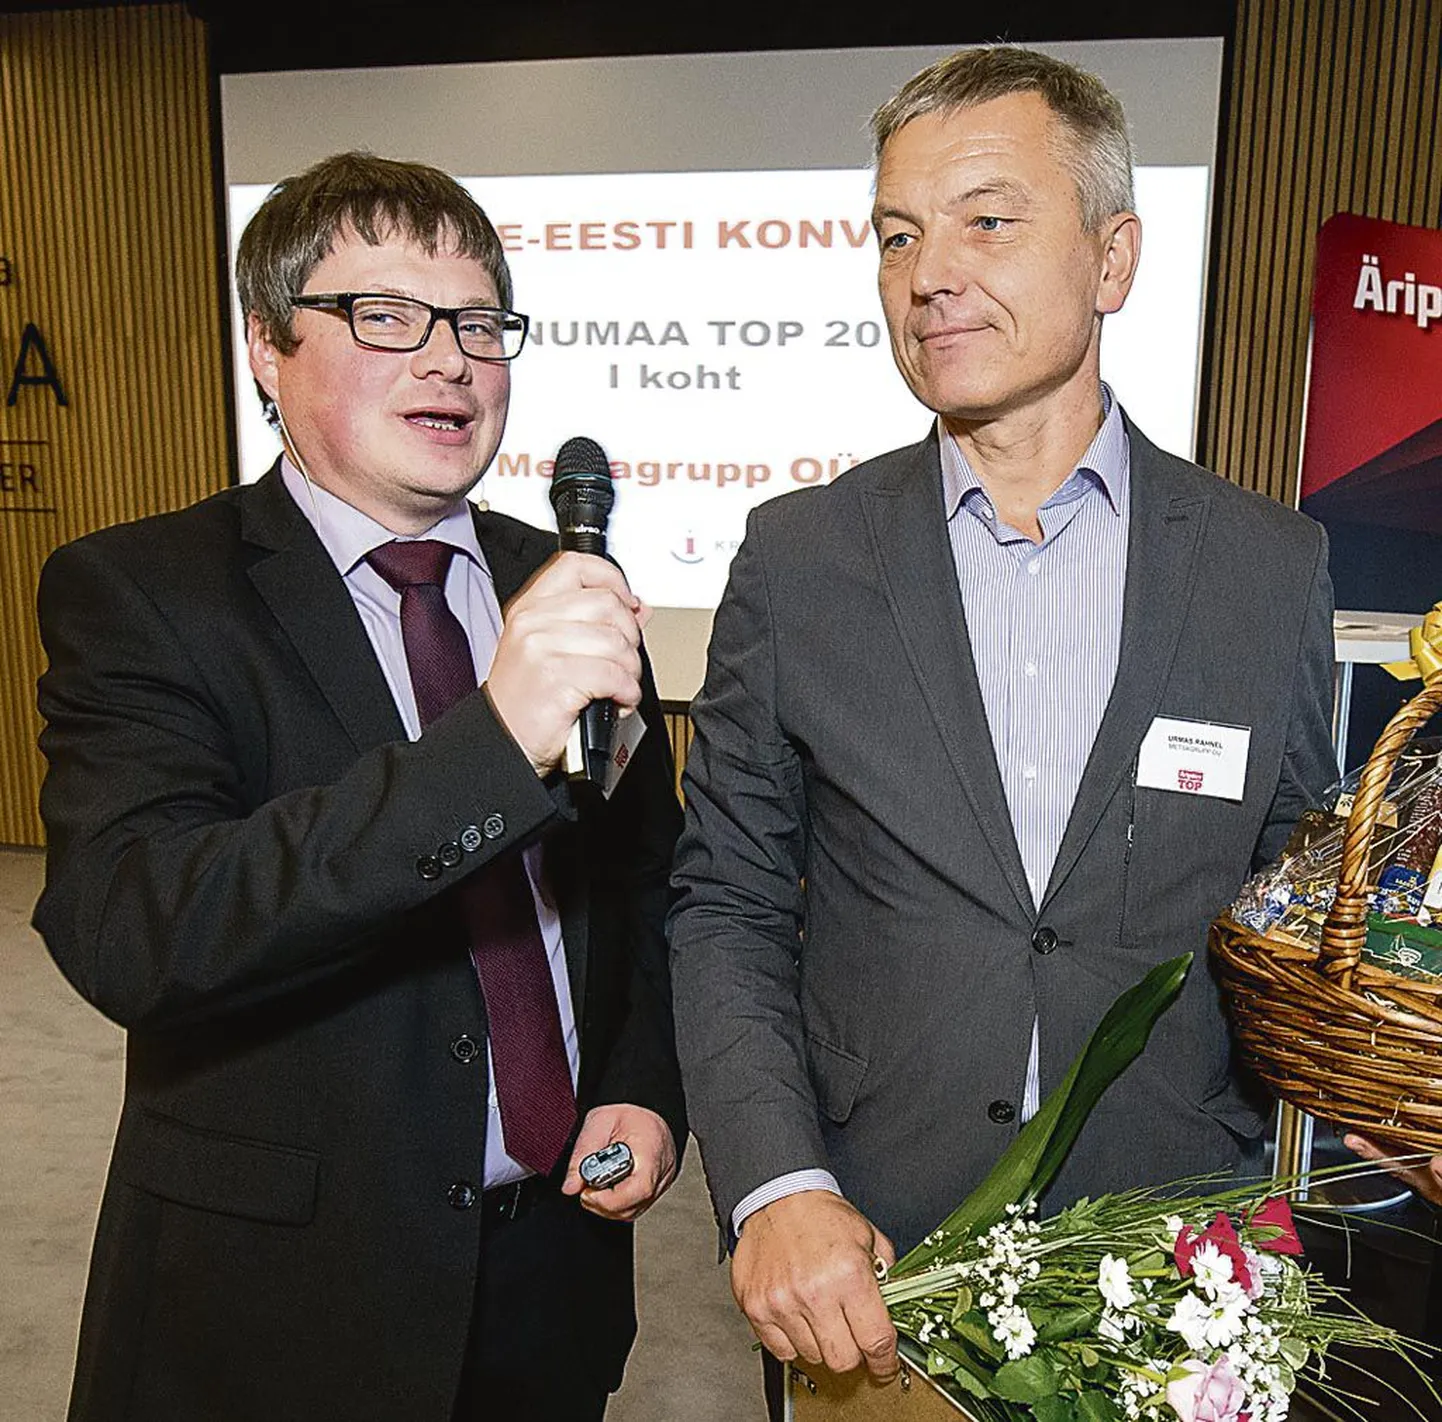 Äripäeva peatoimetaja asetäitja Aivar Hundimägi usutleb lehe Lääne-Eesti konverentsil, kus võitjaid autasustati, Metsagrupi juhatuse liiget Urmas Rahnelit.